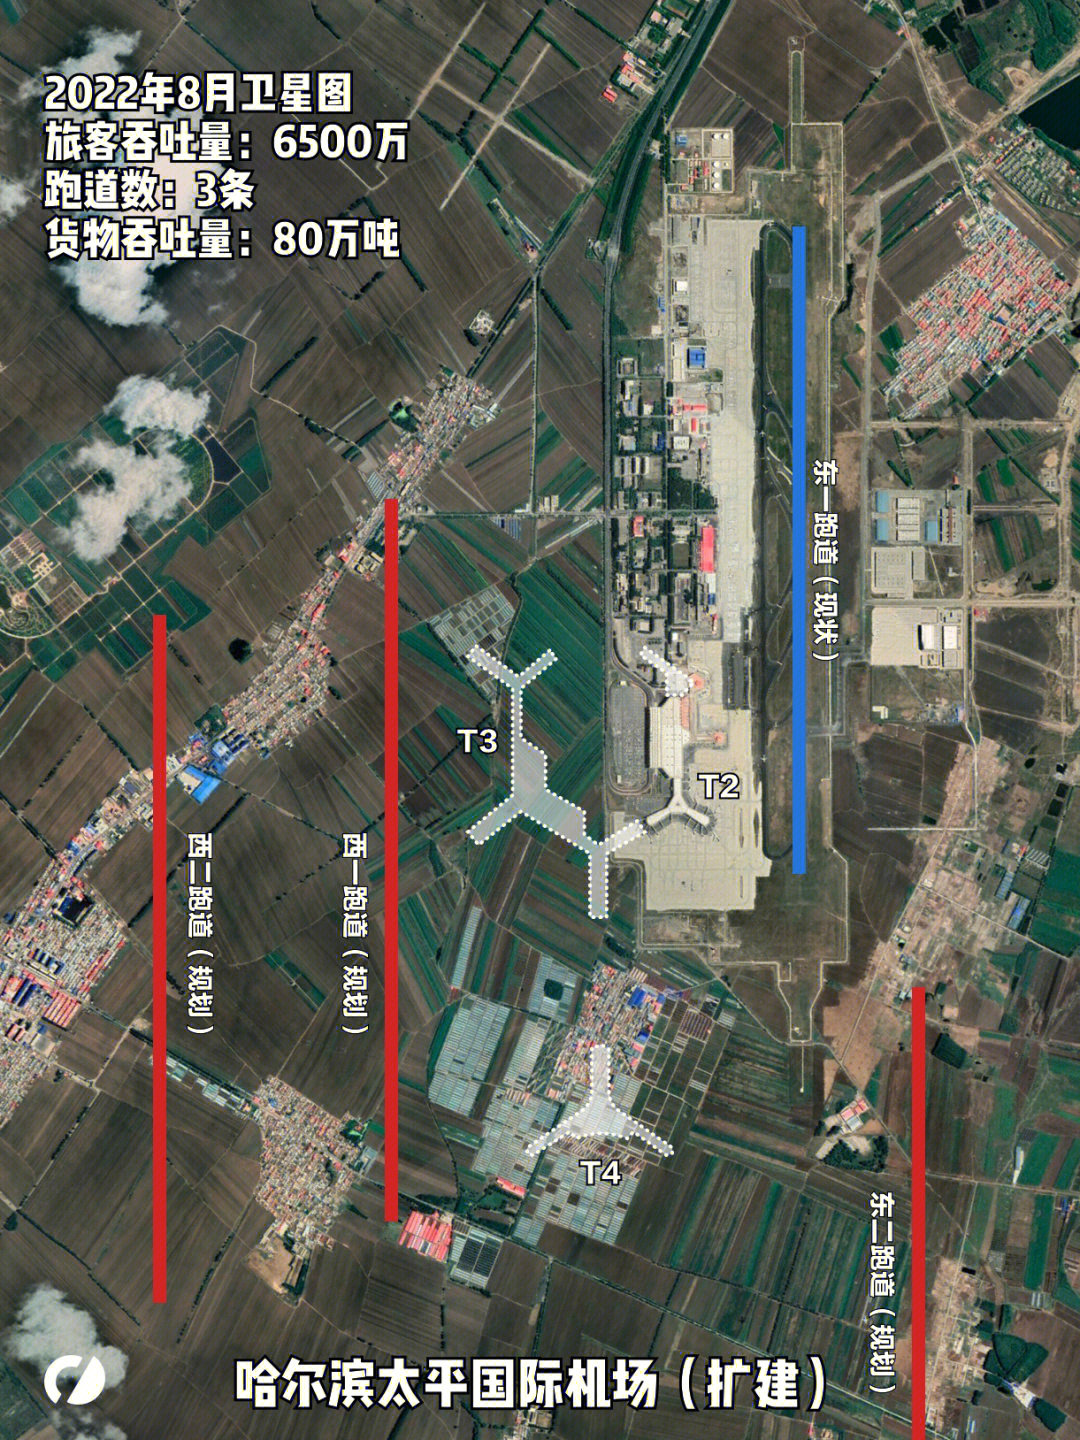 哈尔滨机场平面图指南图片